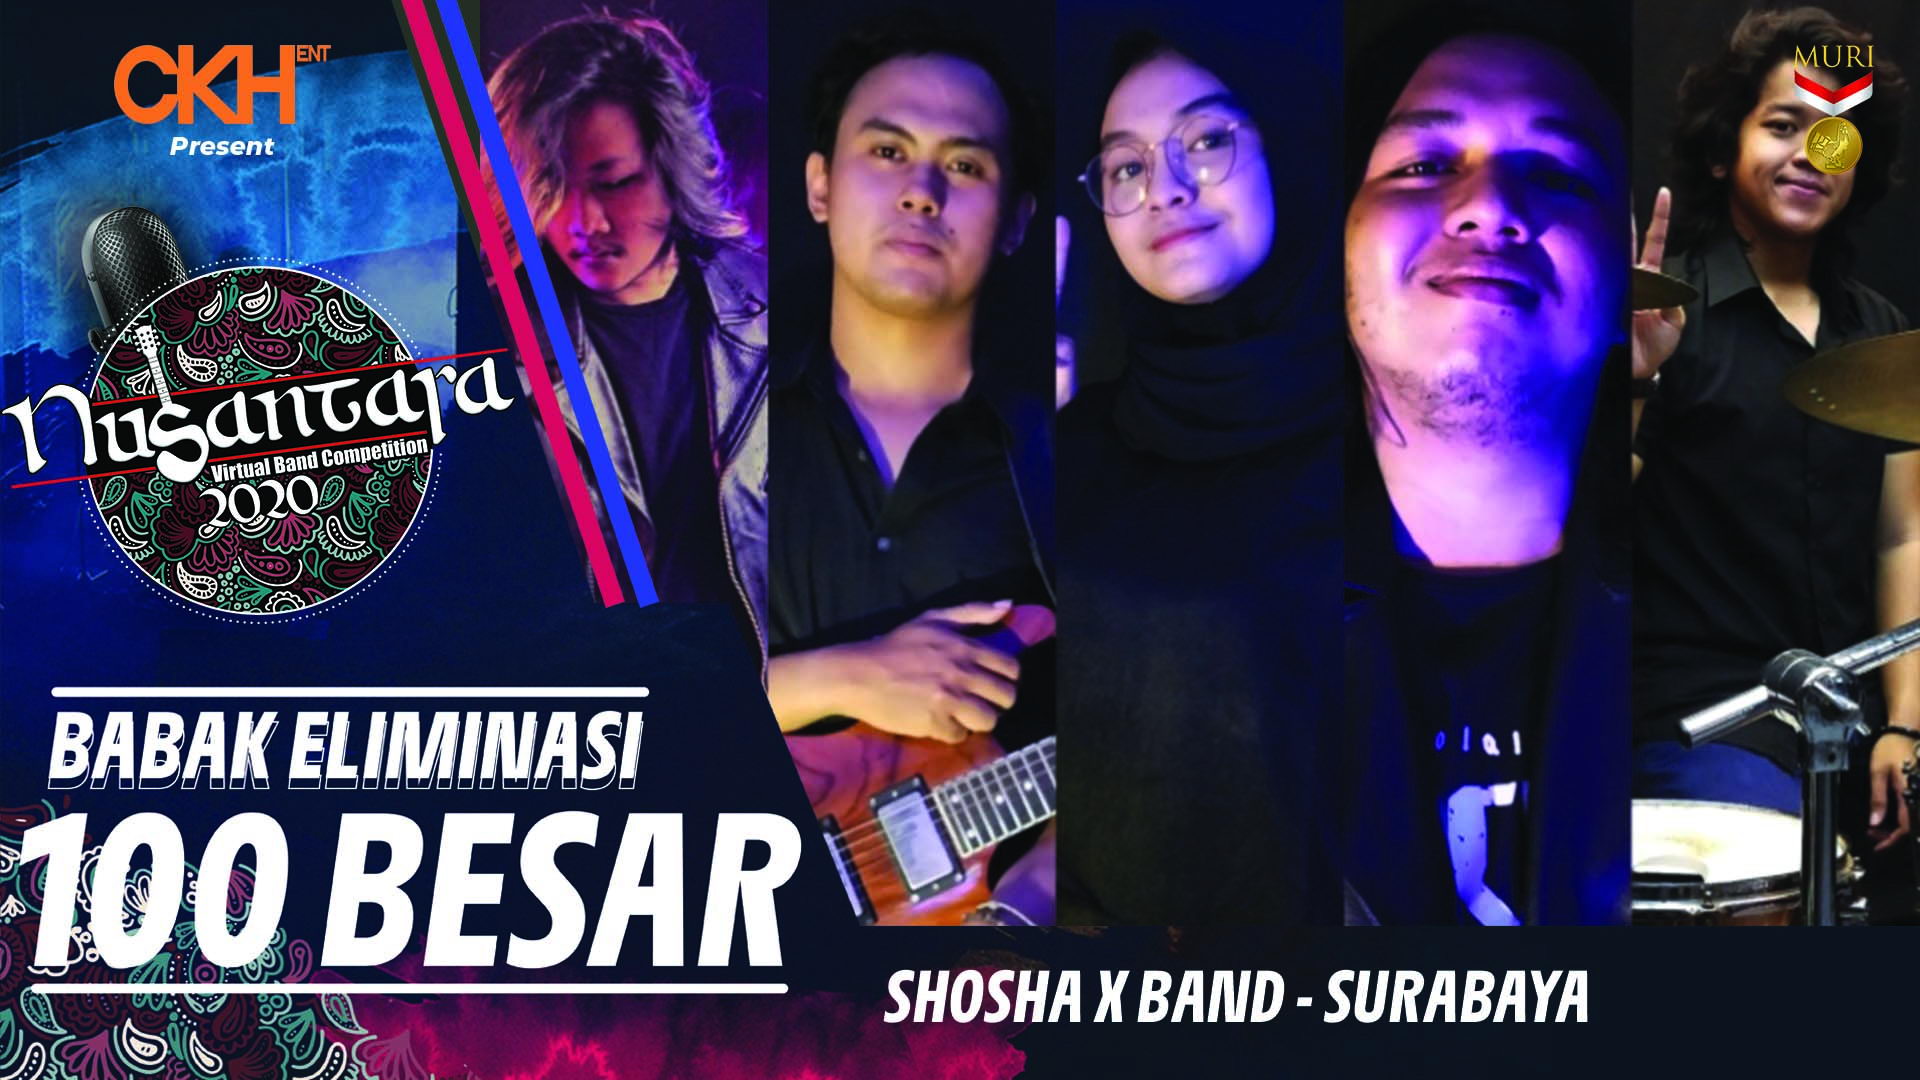 Shosha X Band - Eliminasi 100 Besar Nusantara Virtual Band Competition